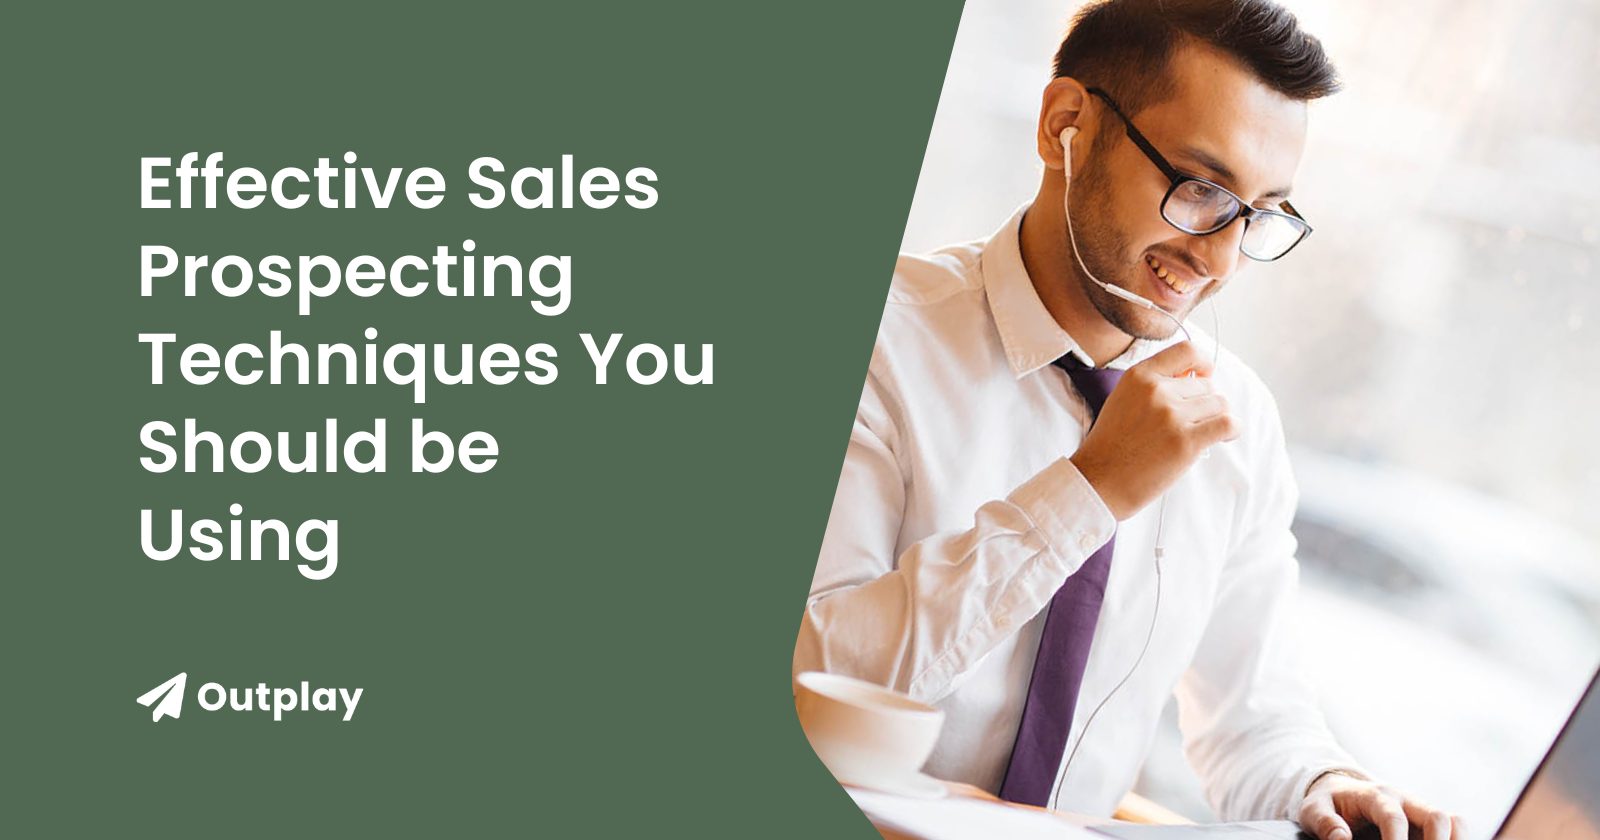 Effective sales prospecting techniques